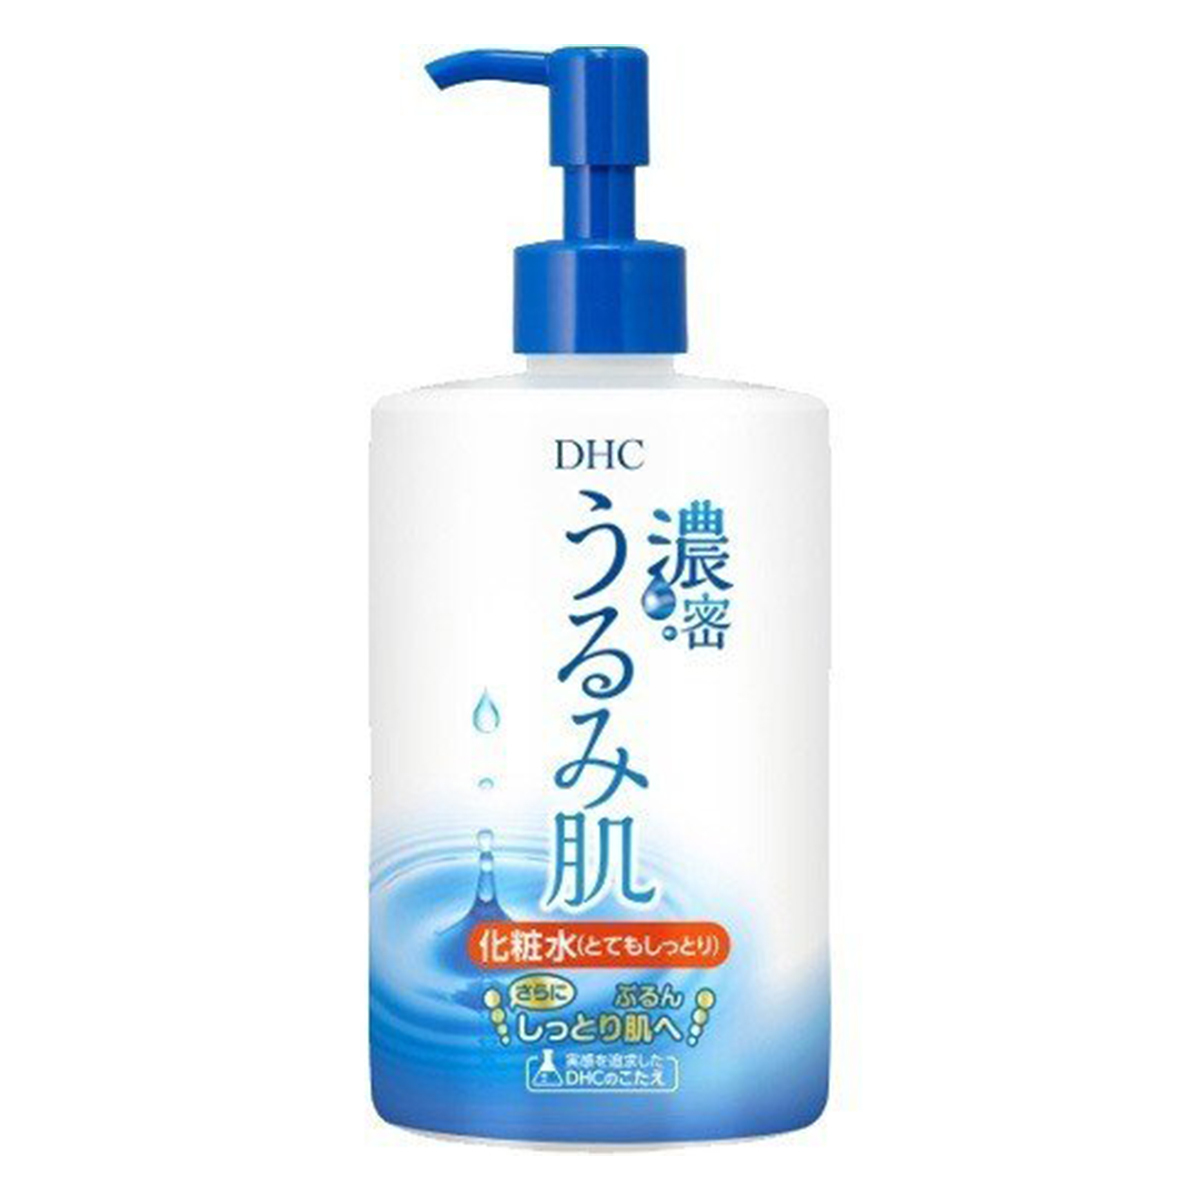 DHC DHC 濃密うるみ肌 化粧水 とてもしっとり 大容量/400ml×1 スキンケア、フェイスケア化粧水の商品画像